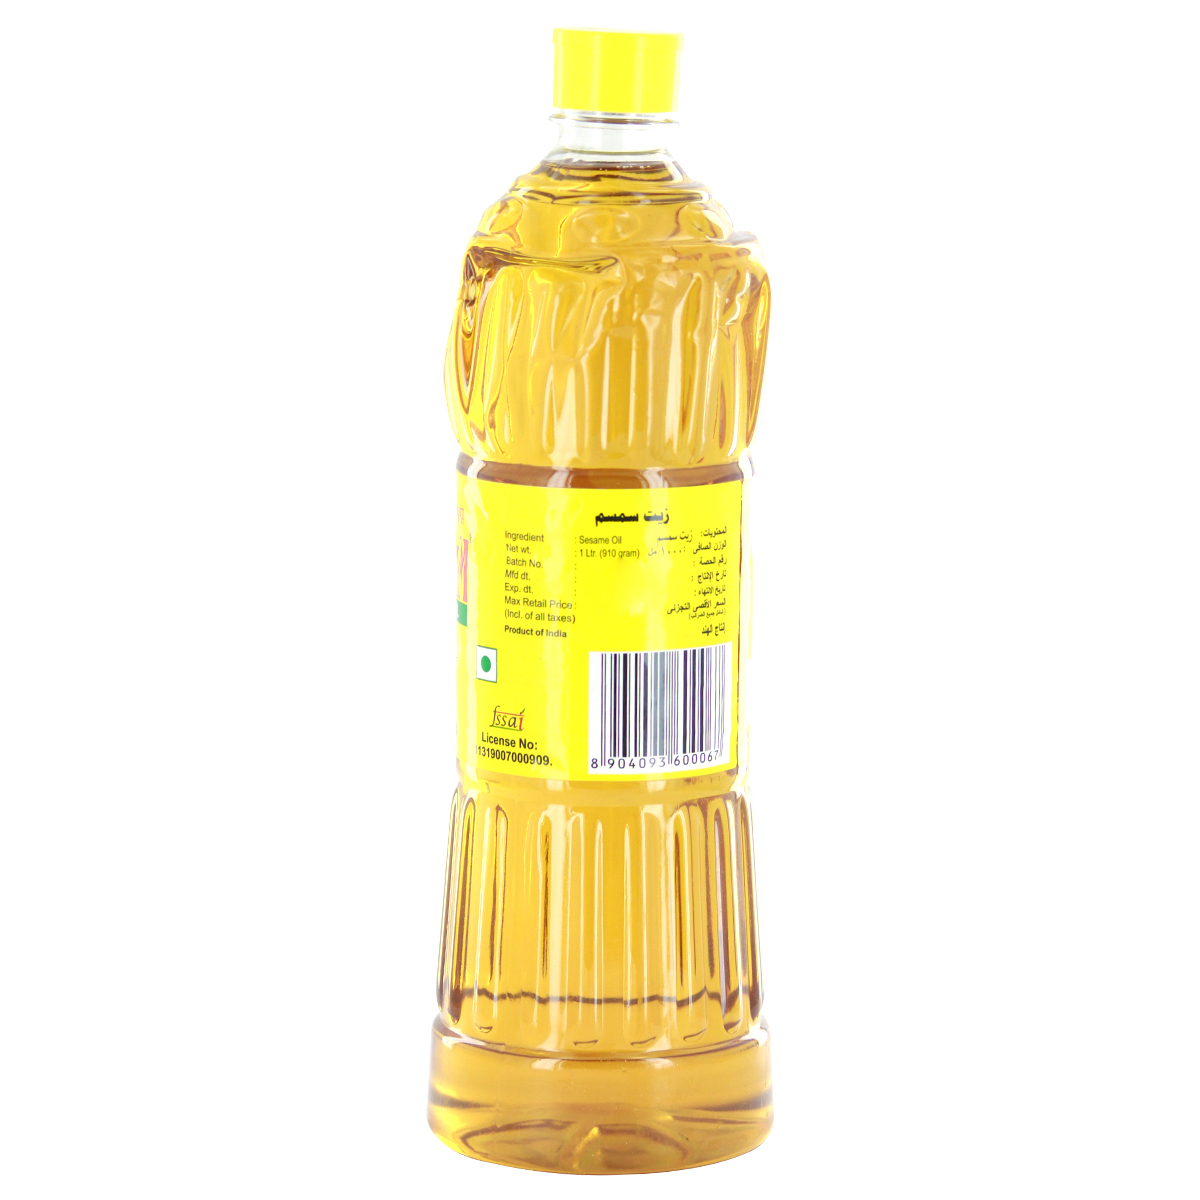 Pavithram Sesame Oil 1Litre